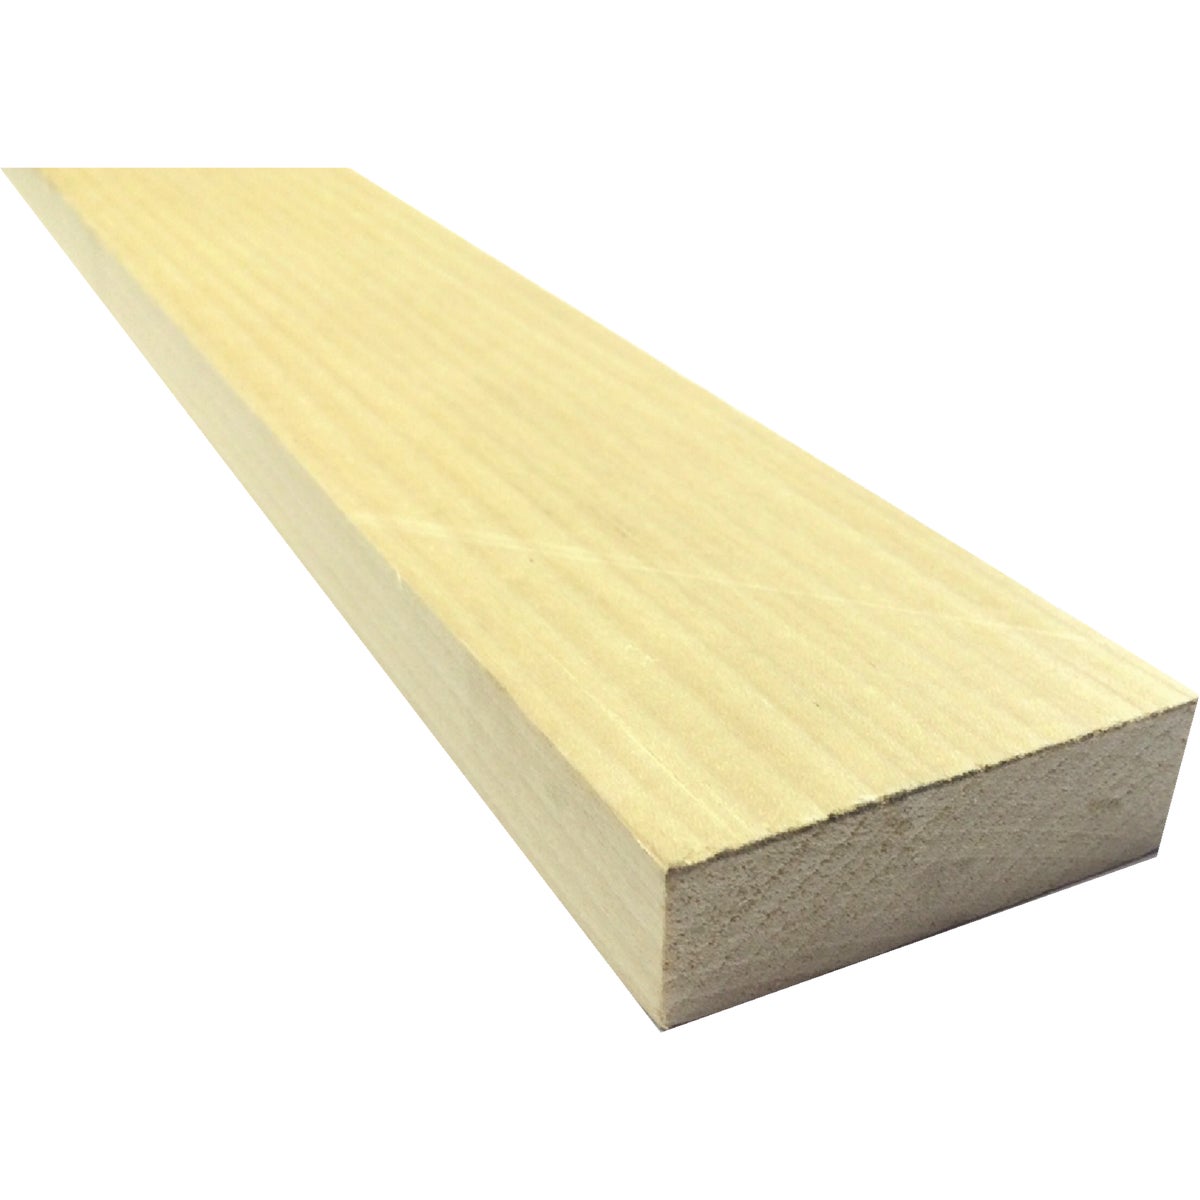 Waddell 1 In. x 3 In. x 8 Ft. Poplar Wood Board